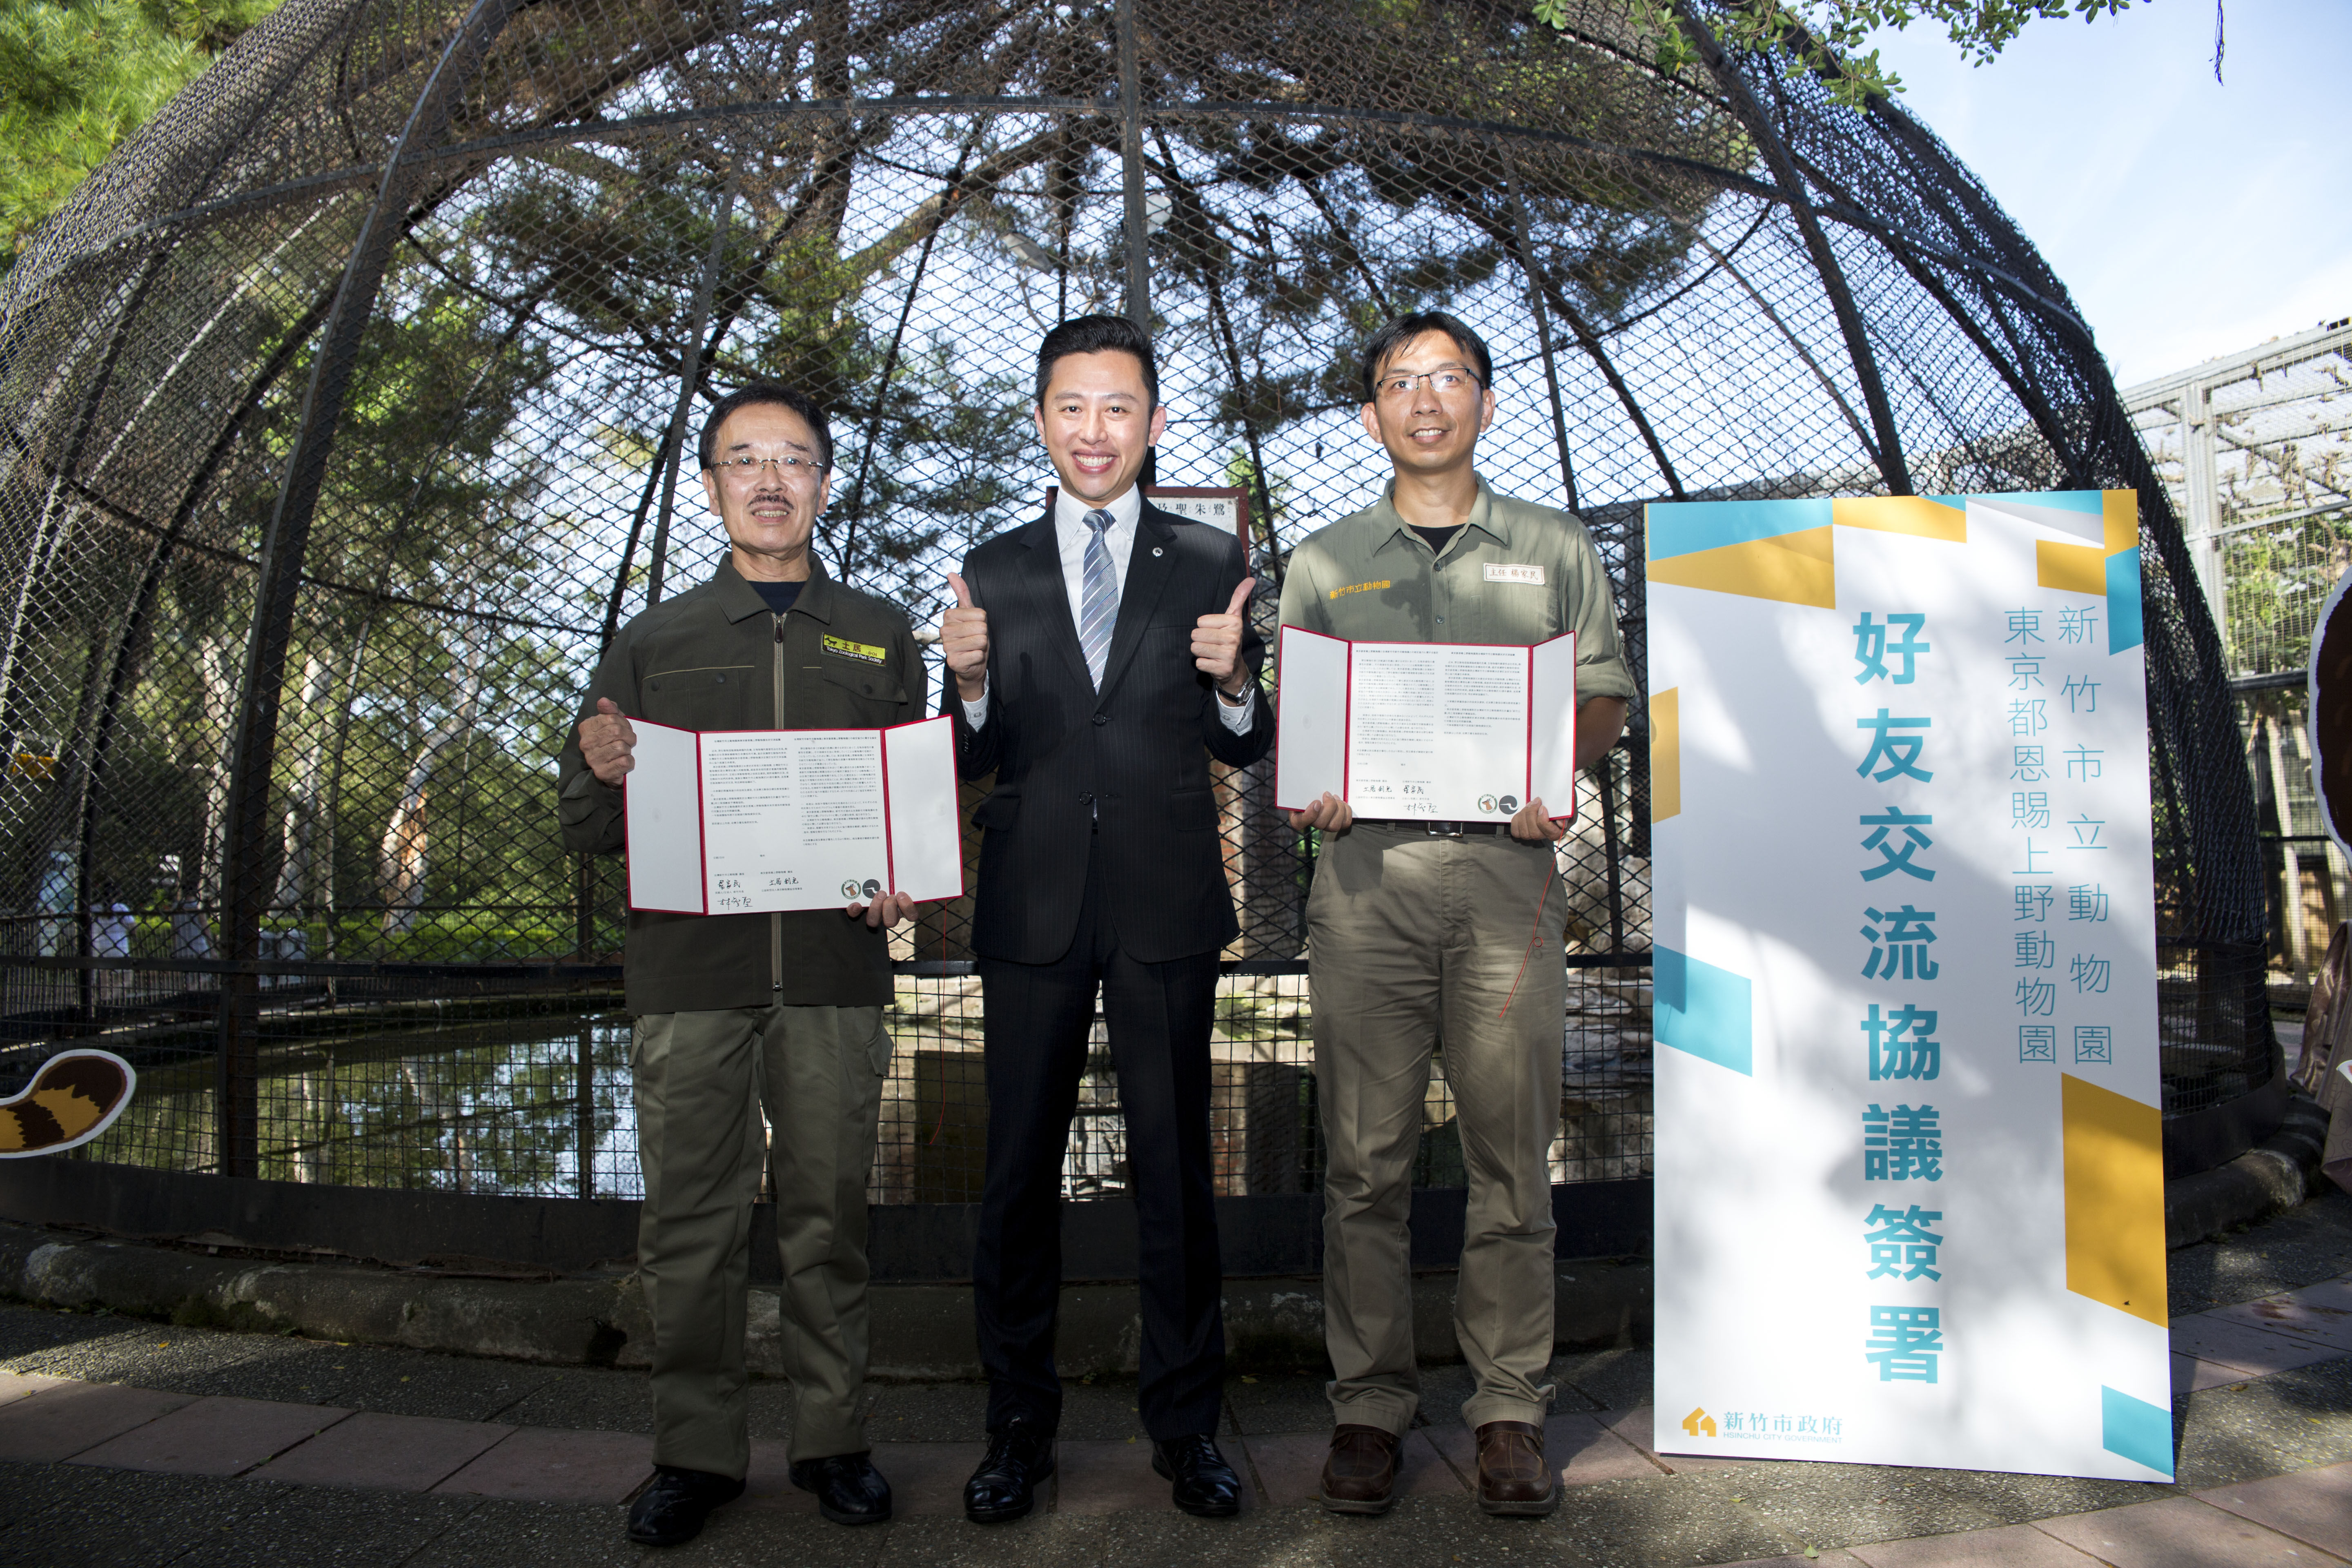 日本上野動物園土居園長受邀參加新竹市立動物園80週年慶祝活動